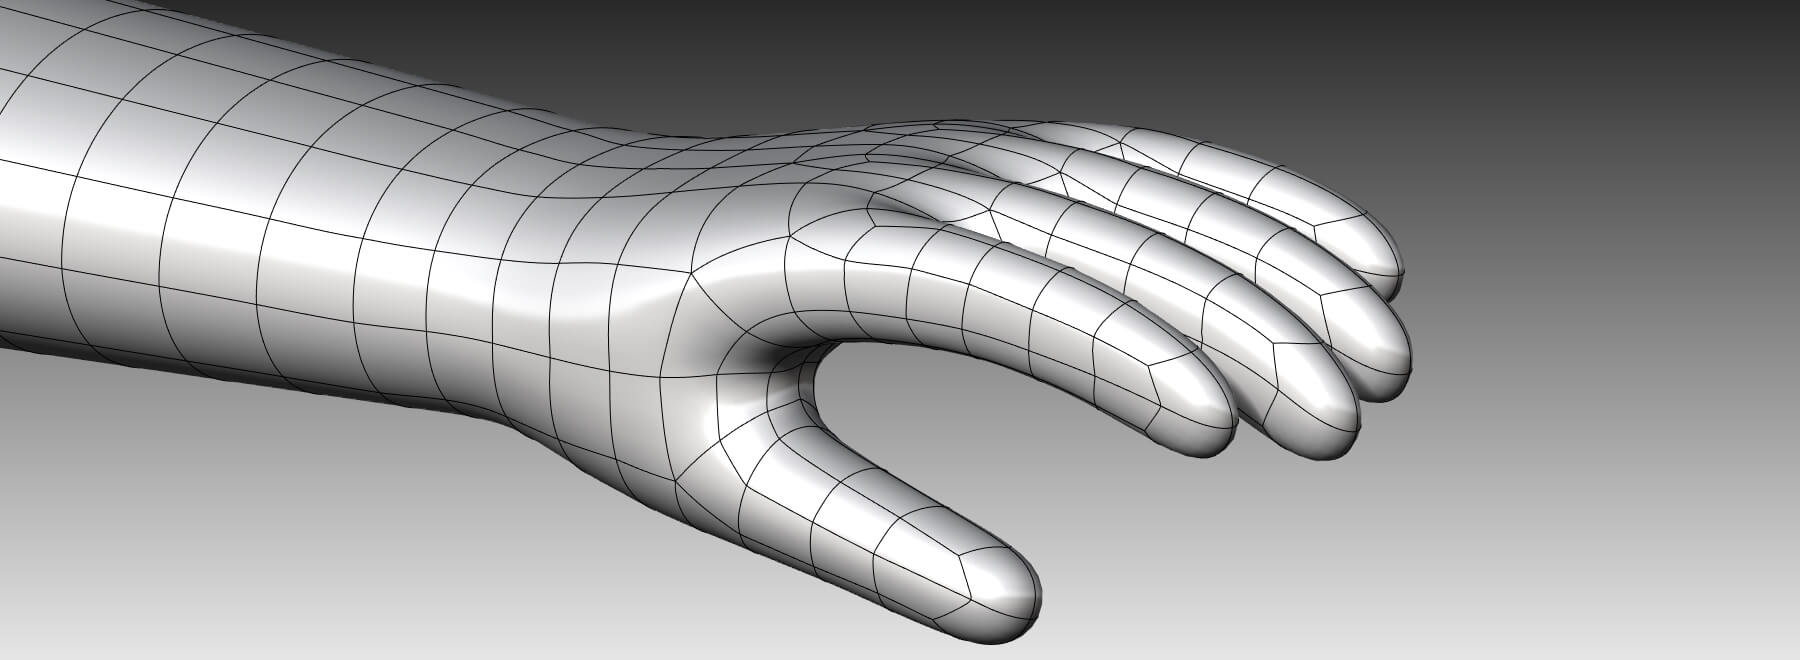 CAD-Modell einer Handschuhform aus Keramit für die Produktion